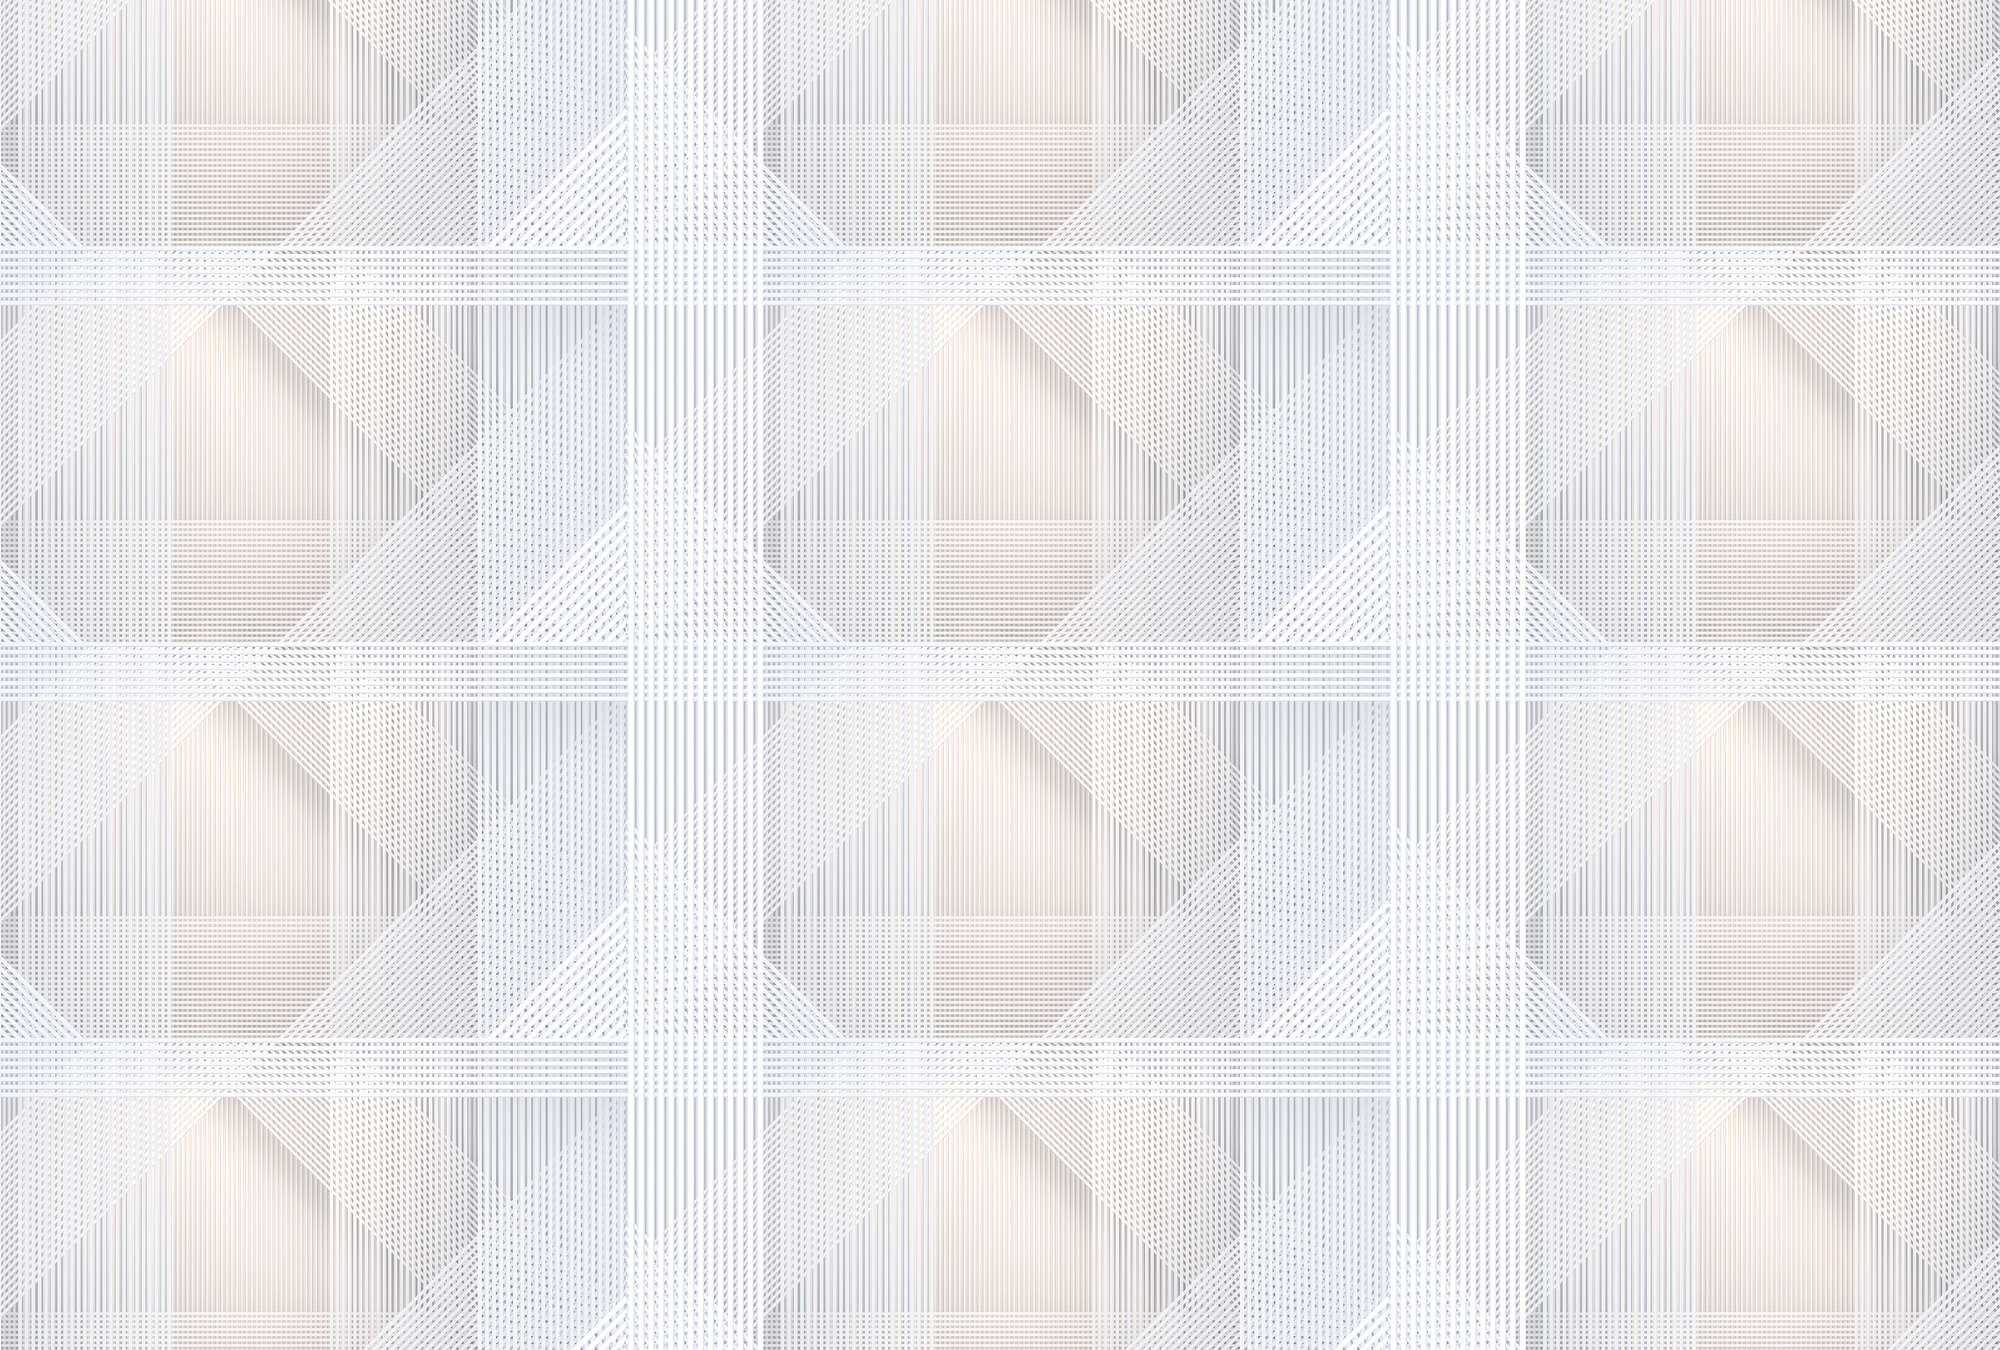             Strings 1 - Fototapete geometrisches Streifen Muster – Grau, Orange | Perlmutt Glattvlies
        